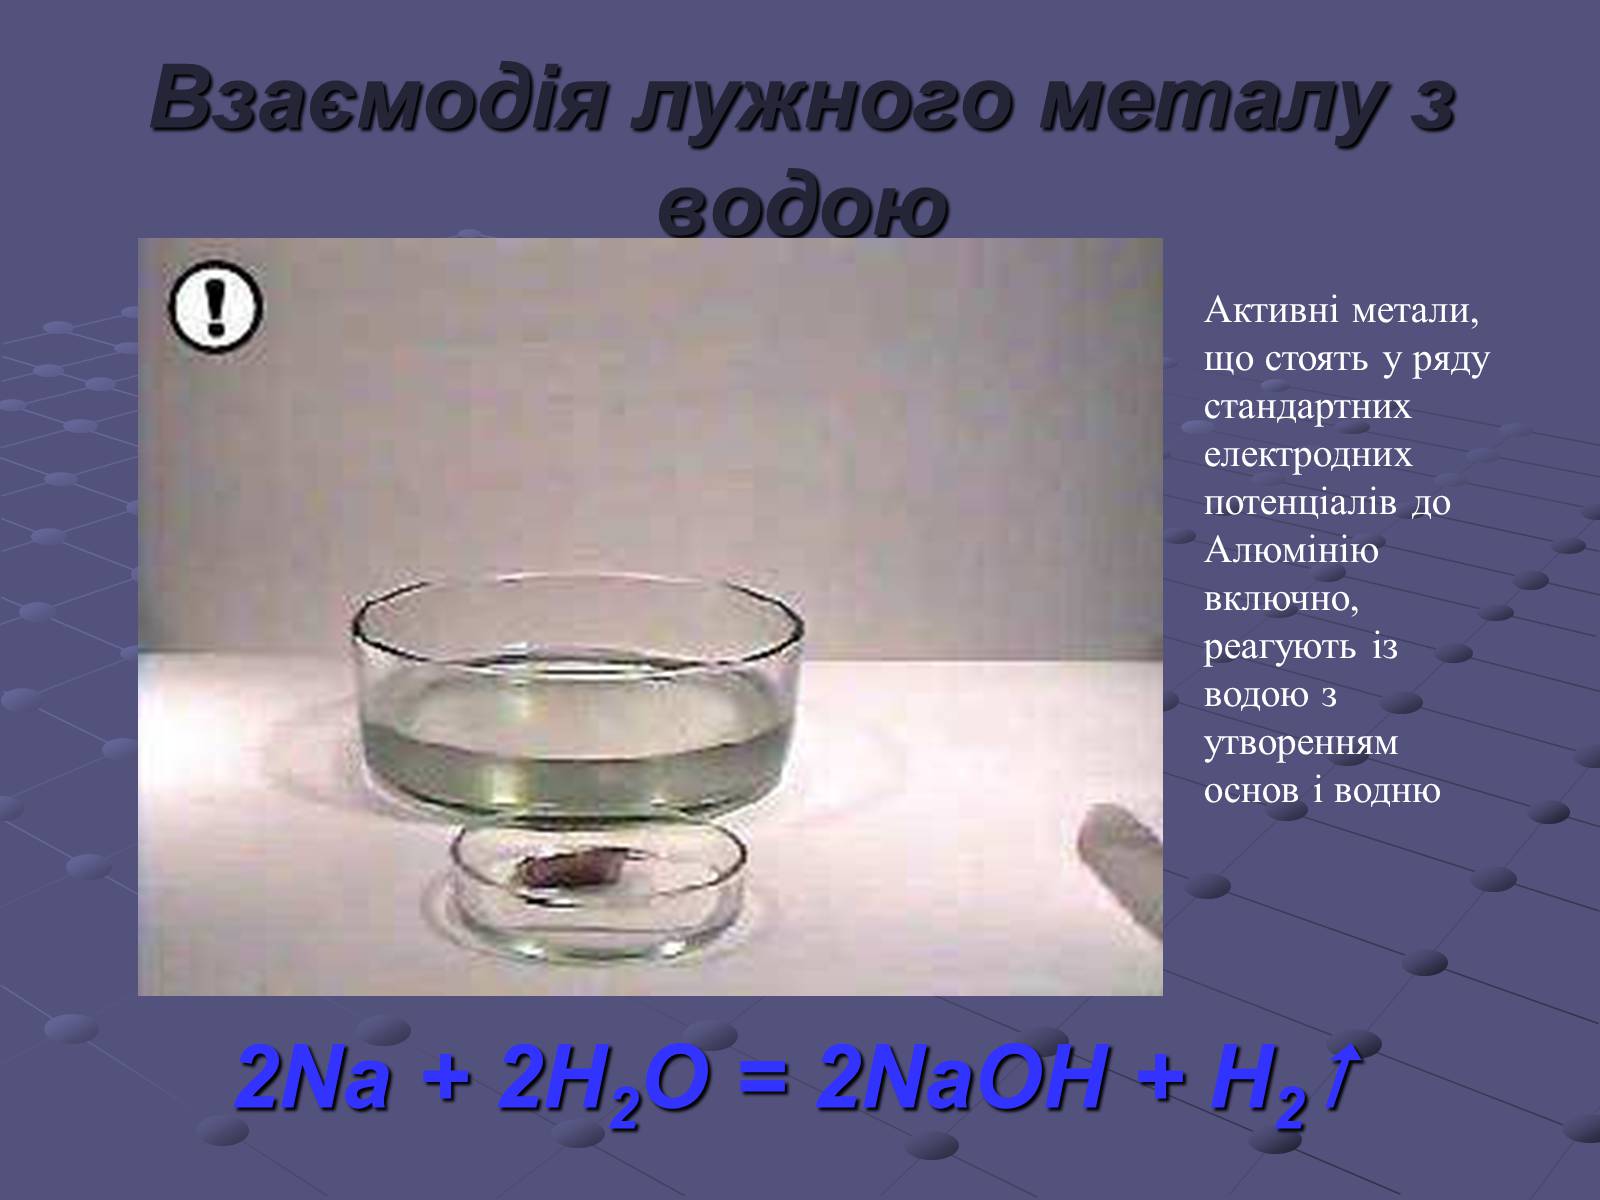 Опыт натрий с водой. Взаимодействие натрия с водой. Металлический натрий с водой. Натрий и вода. Натрий с водой опыт.